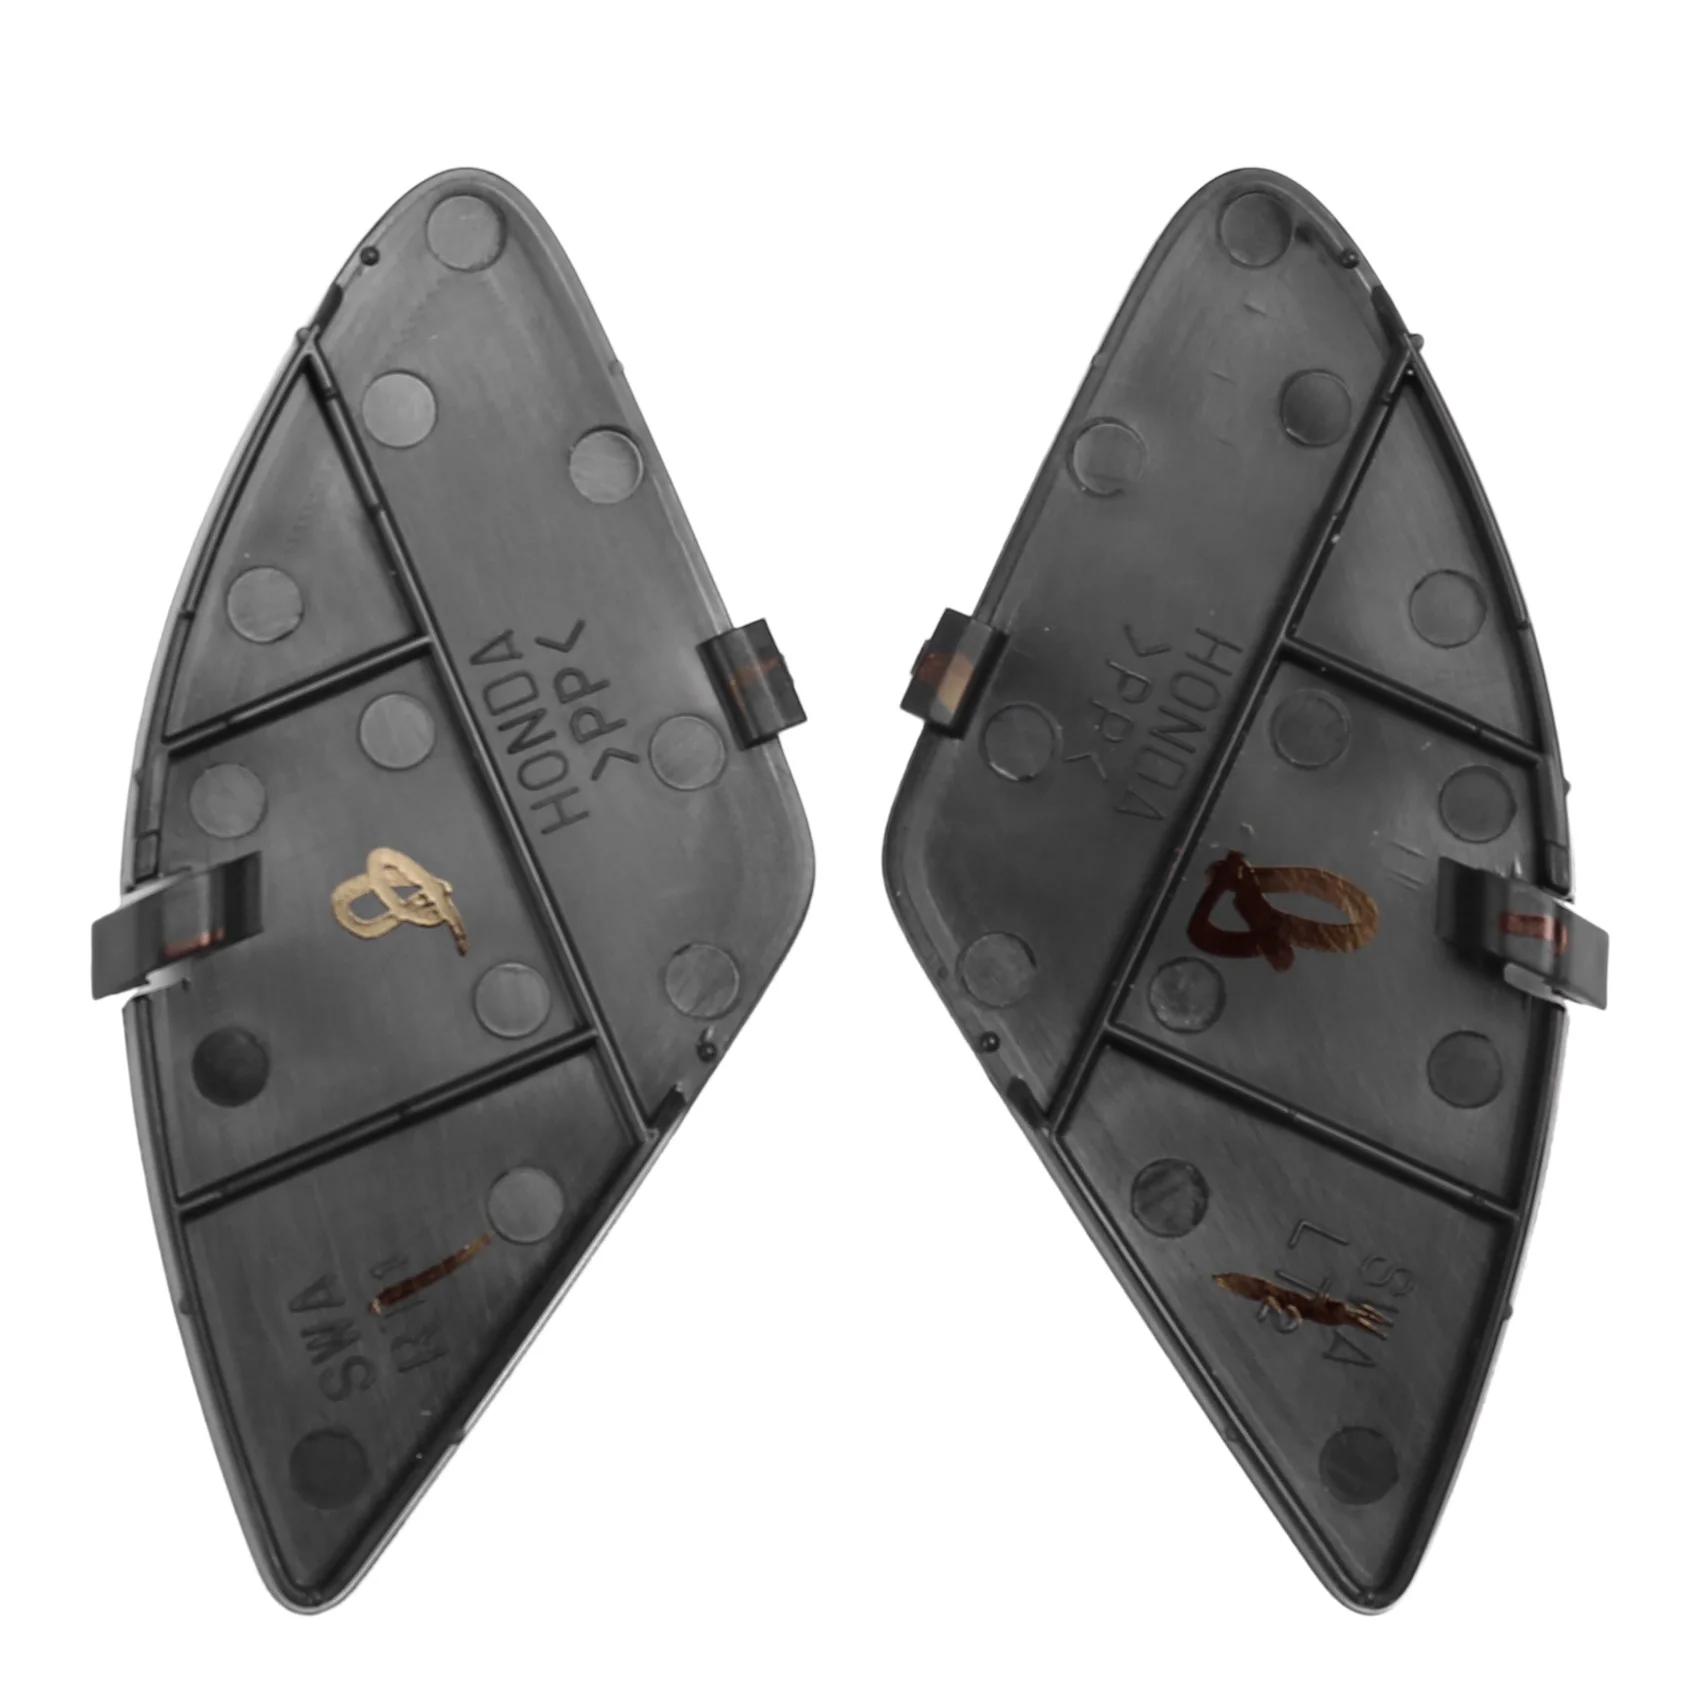 פנימי פנימי בתוך ידית הדלת לכסות את שווי התיק מכסה עבור הונדה CRV-CR-V 2007 - 2011 צבע שחור קדמי=1 סט אחורי. התמונה 5